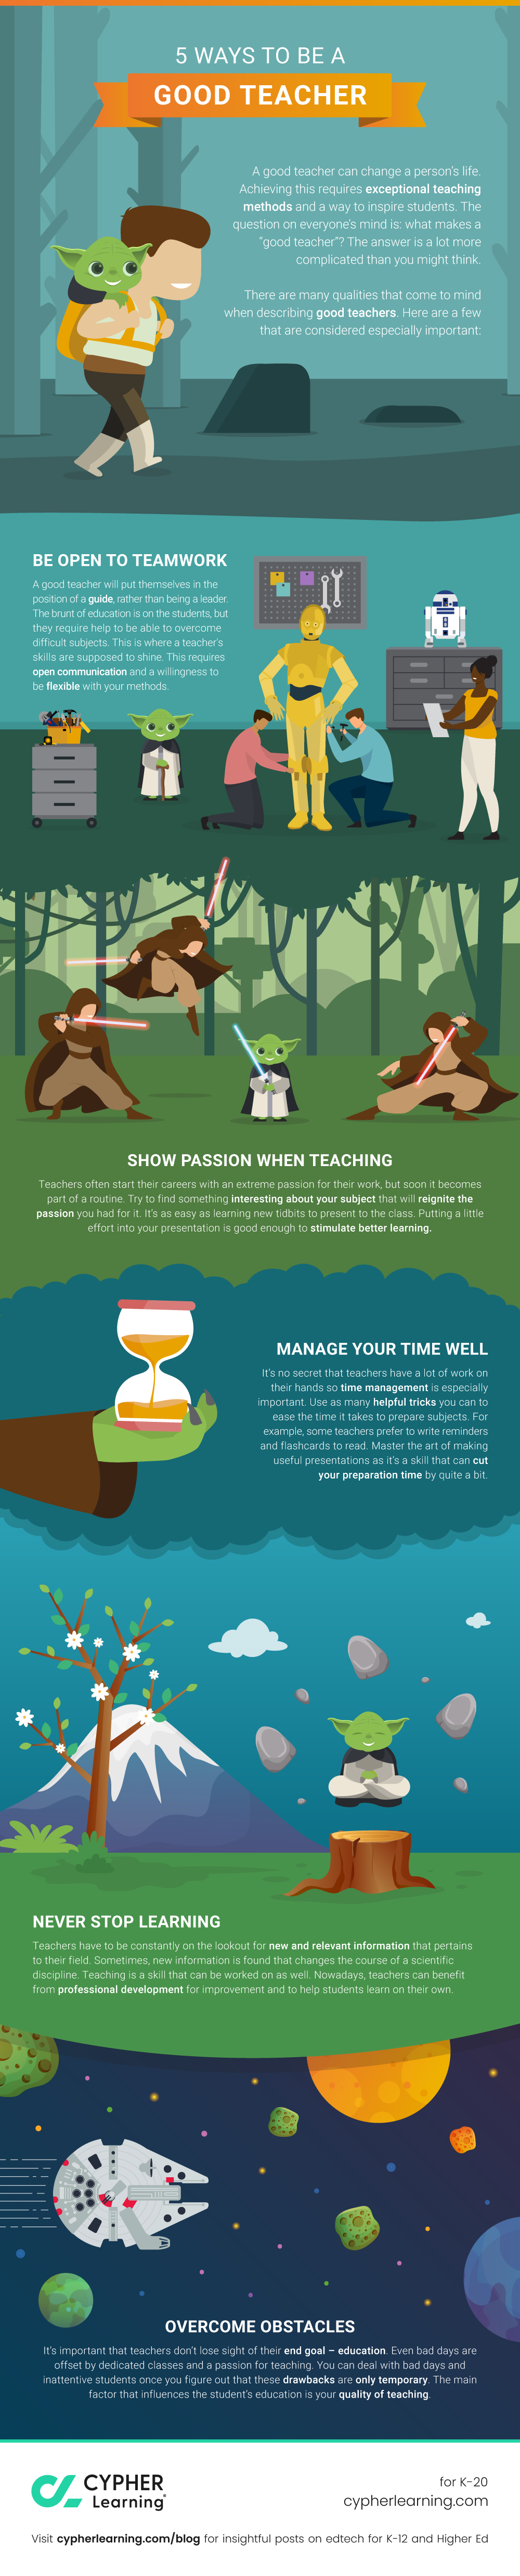 5 ways to be a good teacher